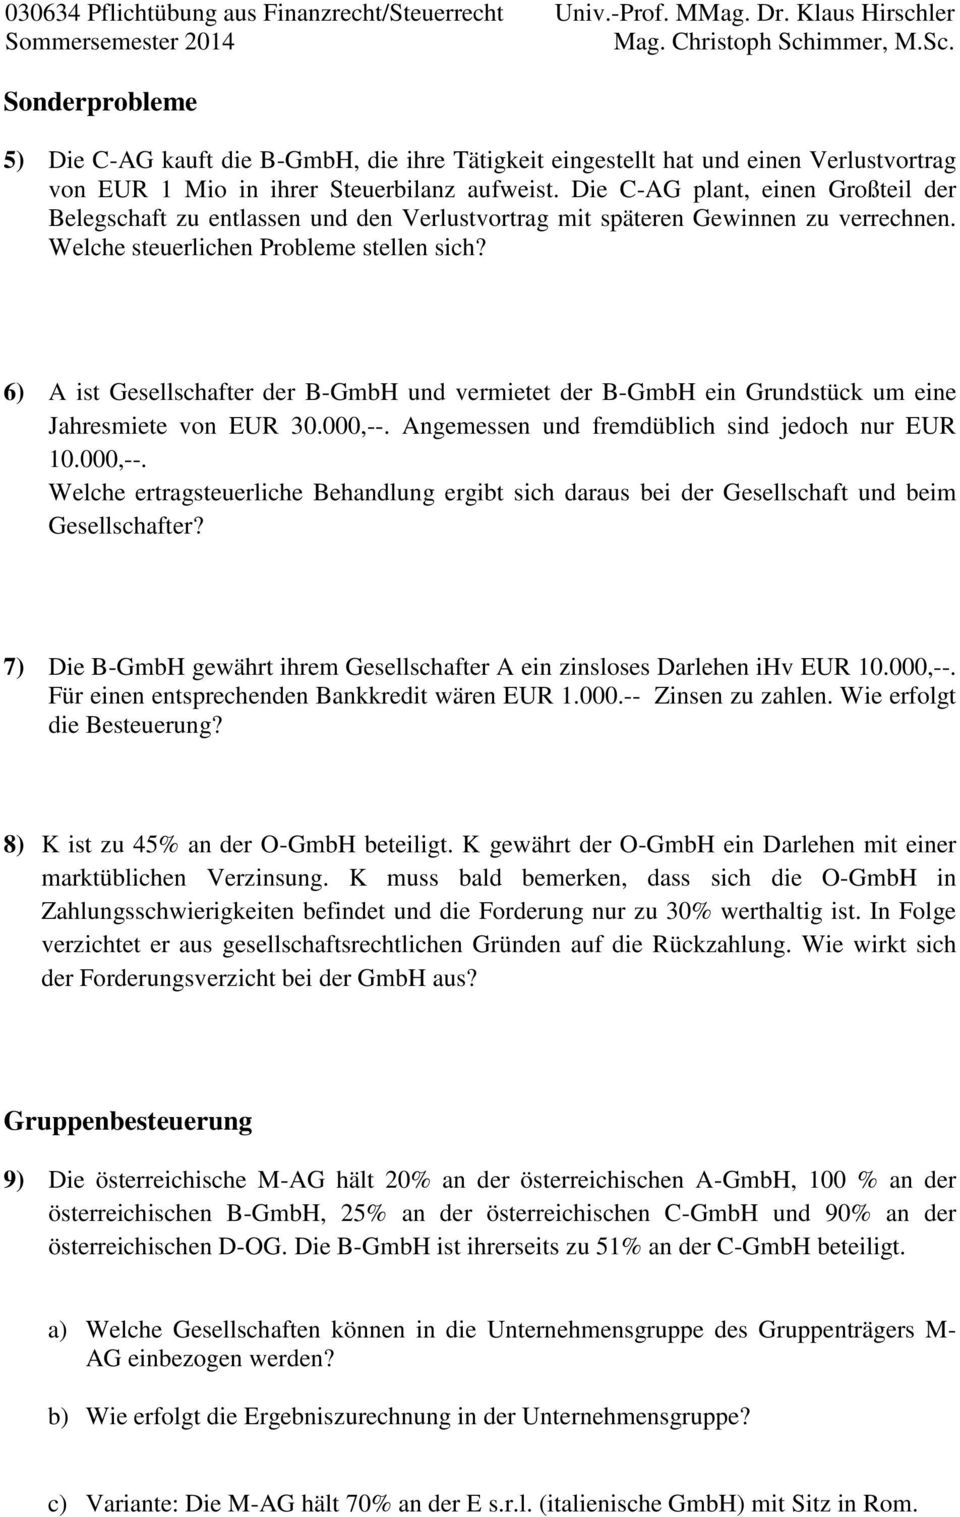 6) A ist Gesellschafter der B-GmbH und vermietet der B-GmbH ein Grundstück um eine Jahresmiete von EUR 30.000,--.